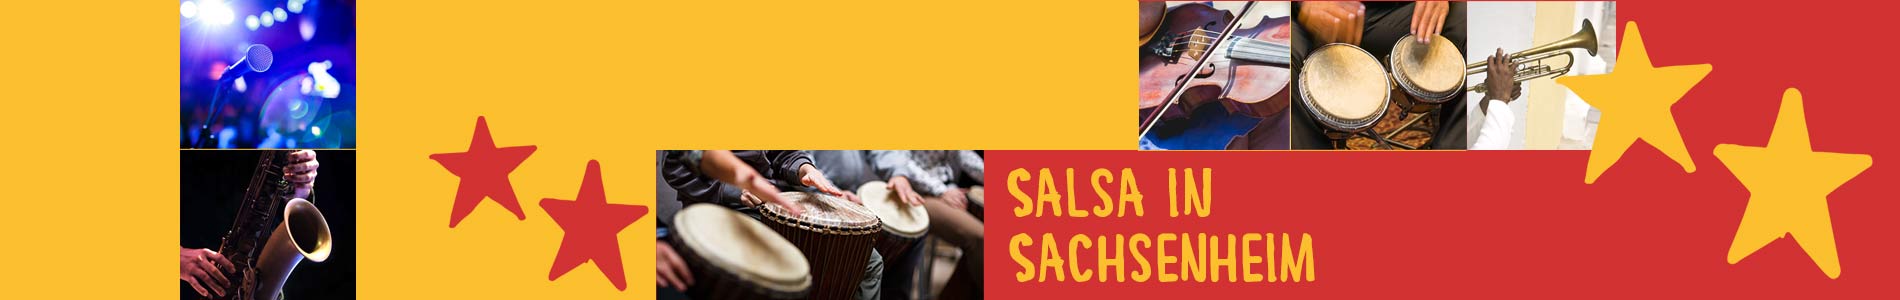 Salsa in Sachsenheim – Salsa lernen und tanzen, Tanzkurse, Partys, Veranstaltungen